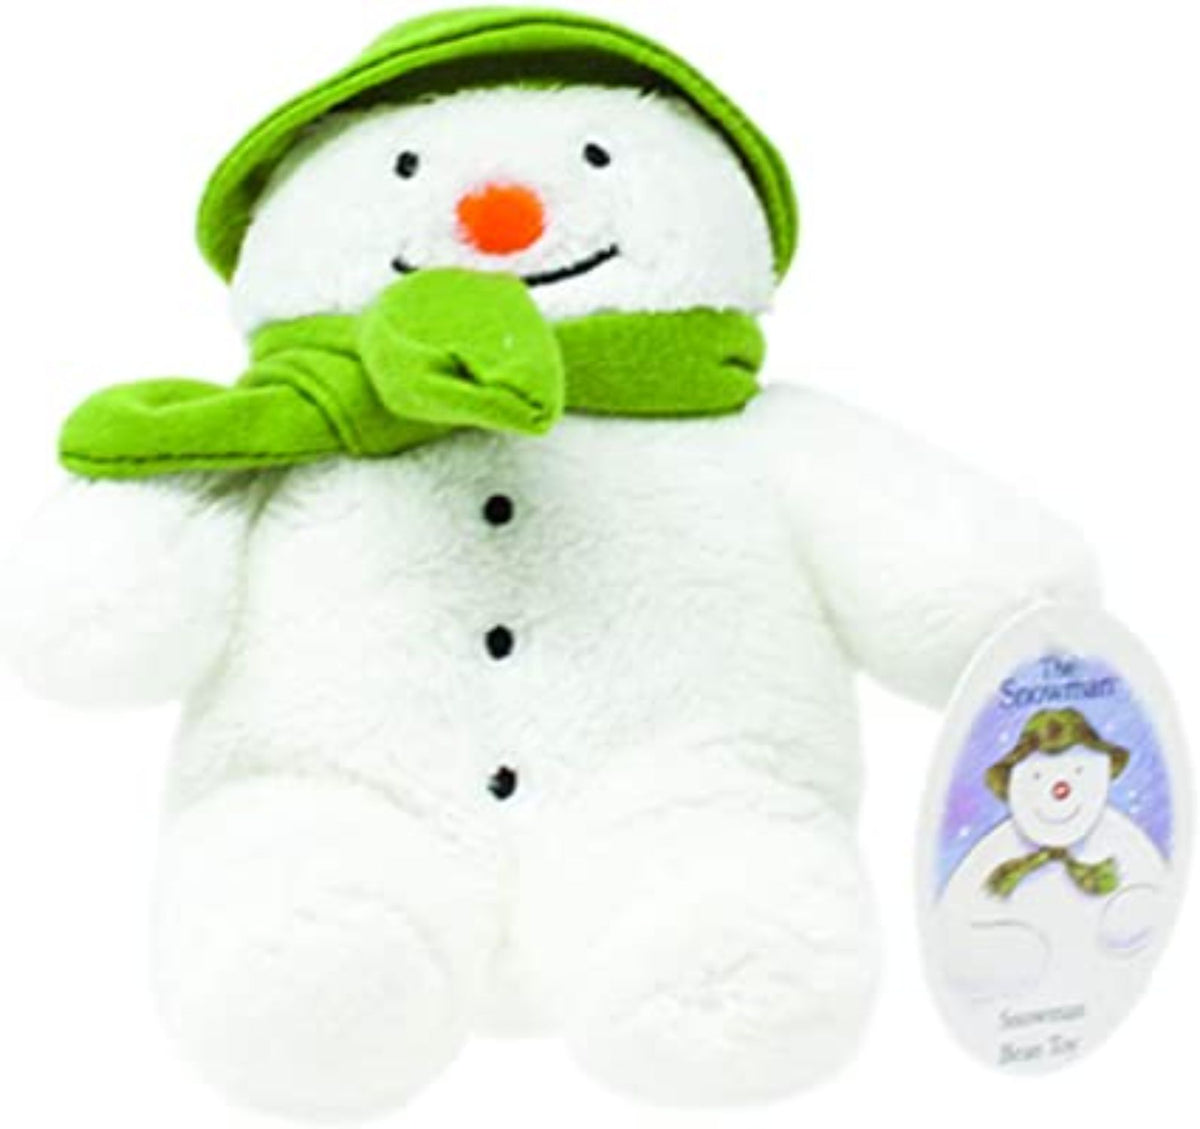 The Snowman Bean Toy